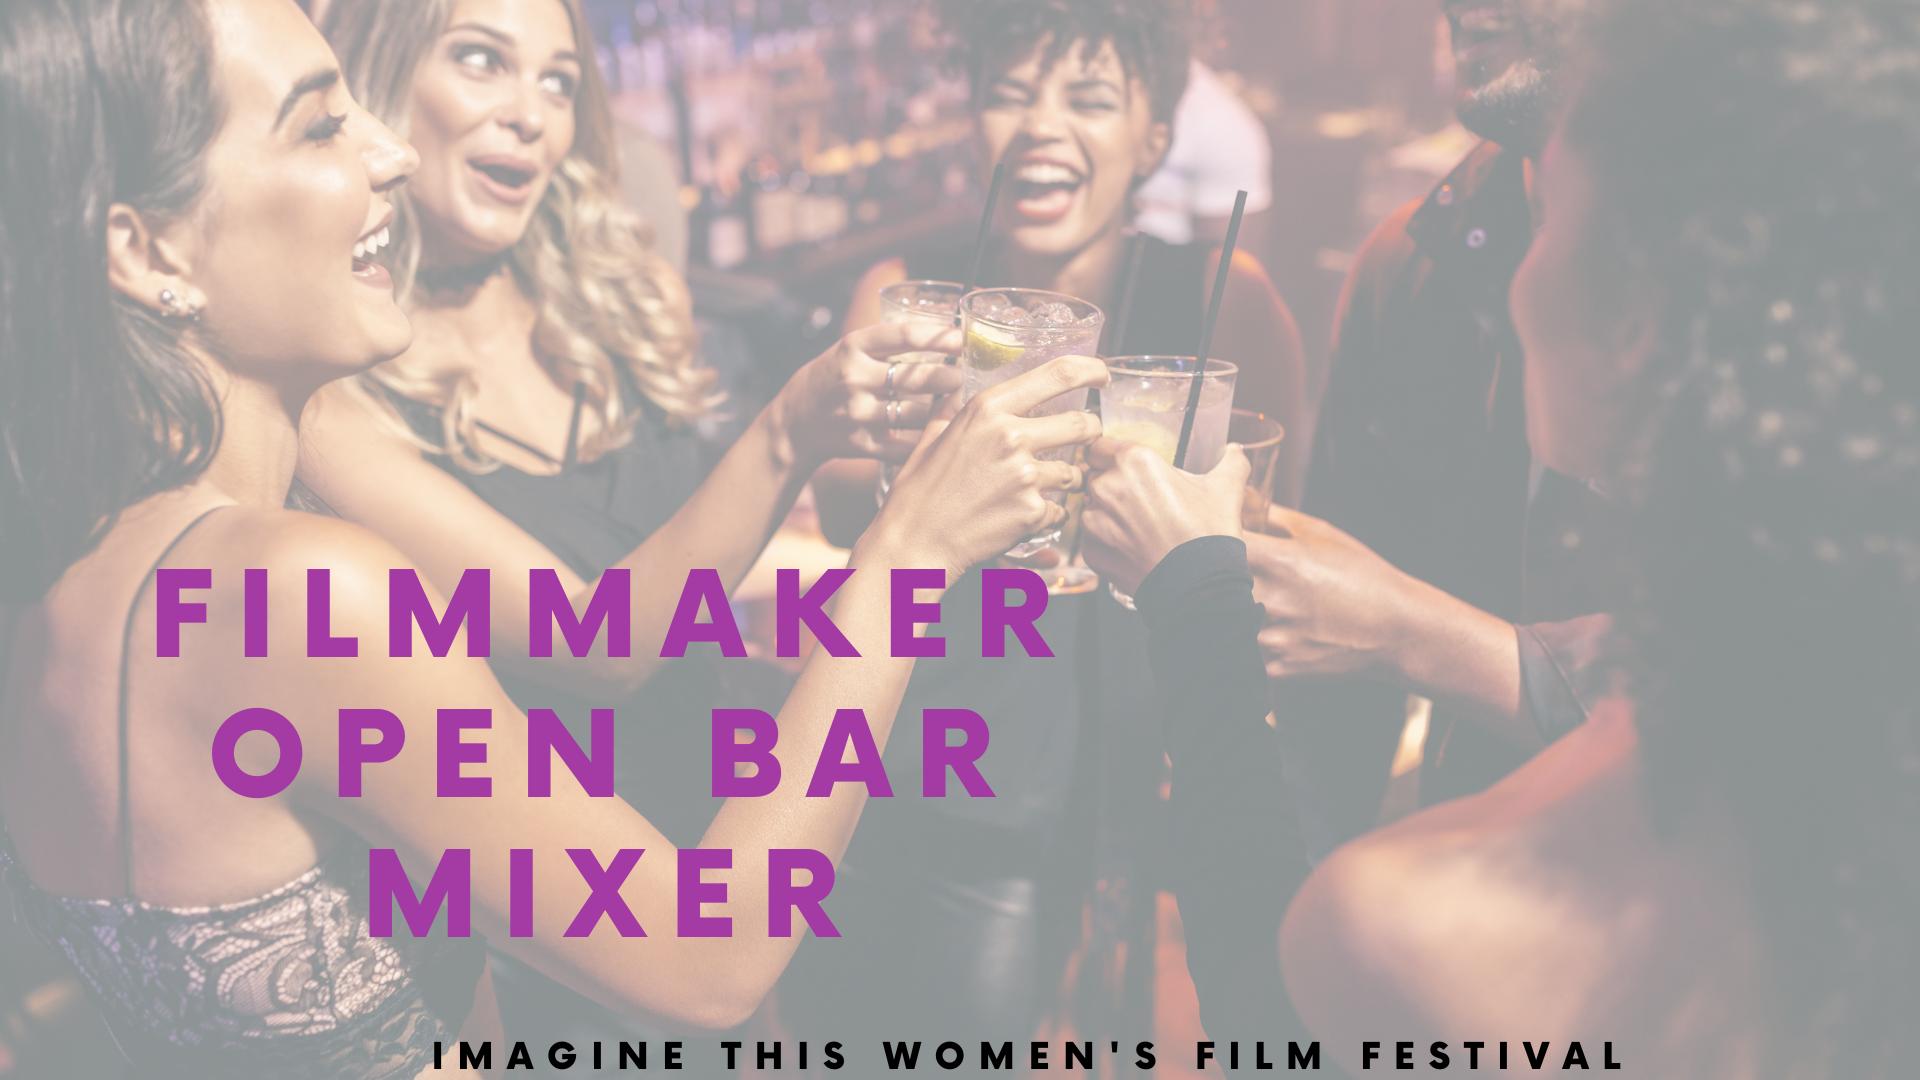 Filmmaker Open Bar Mixer